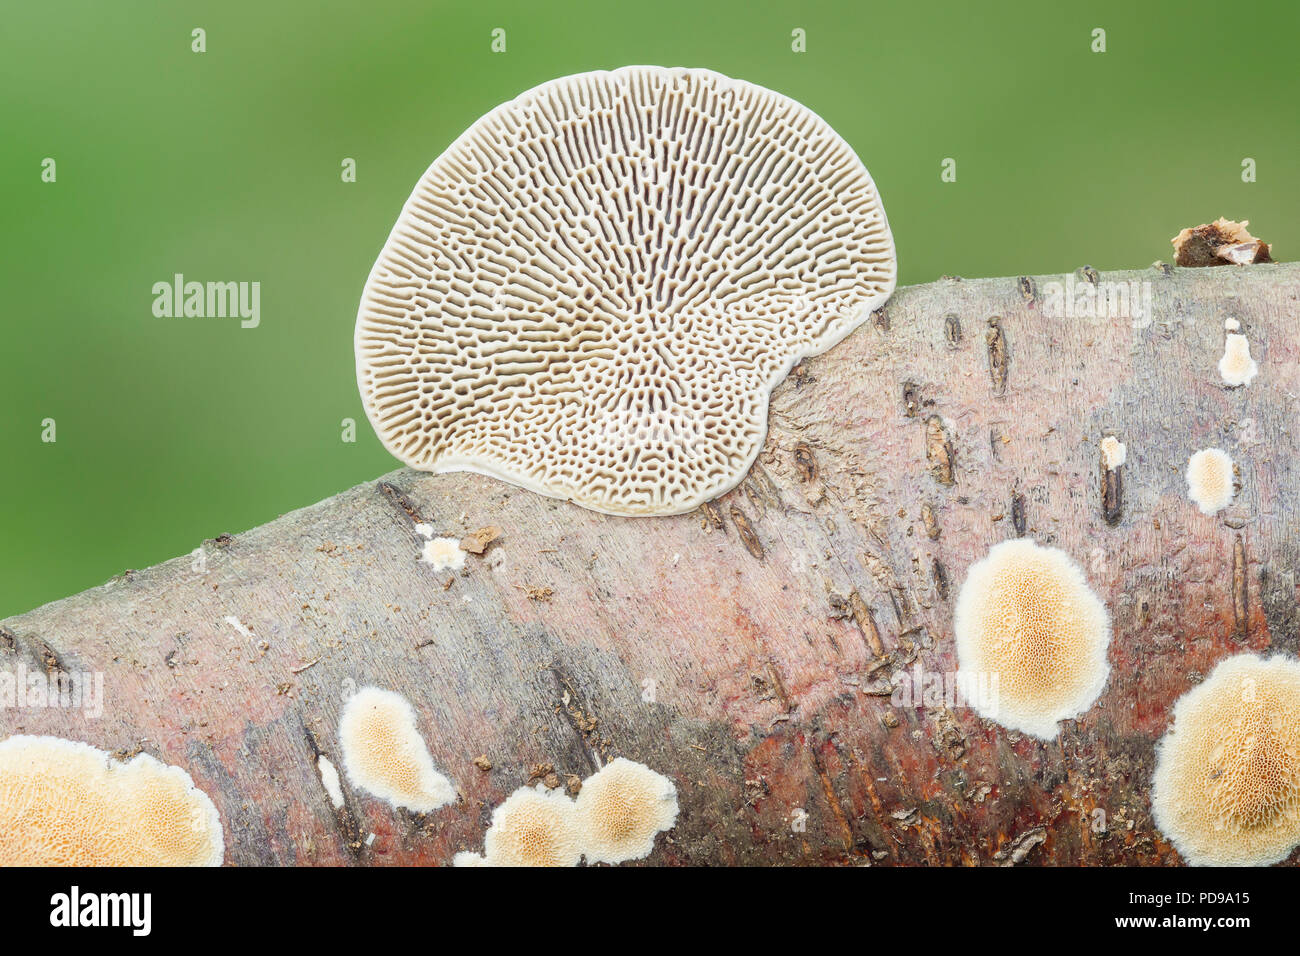 Dünnwandige Labyrinth Polypore (Daedaleopsis confragosa) Pilz auf einem Ast, zeigt die fächerförmigen Fruchtkörper und Labyrinthartigen Unterseite. Stockfoto